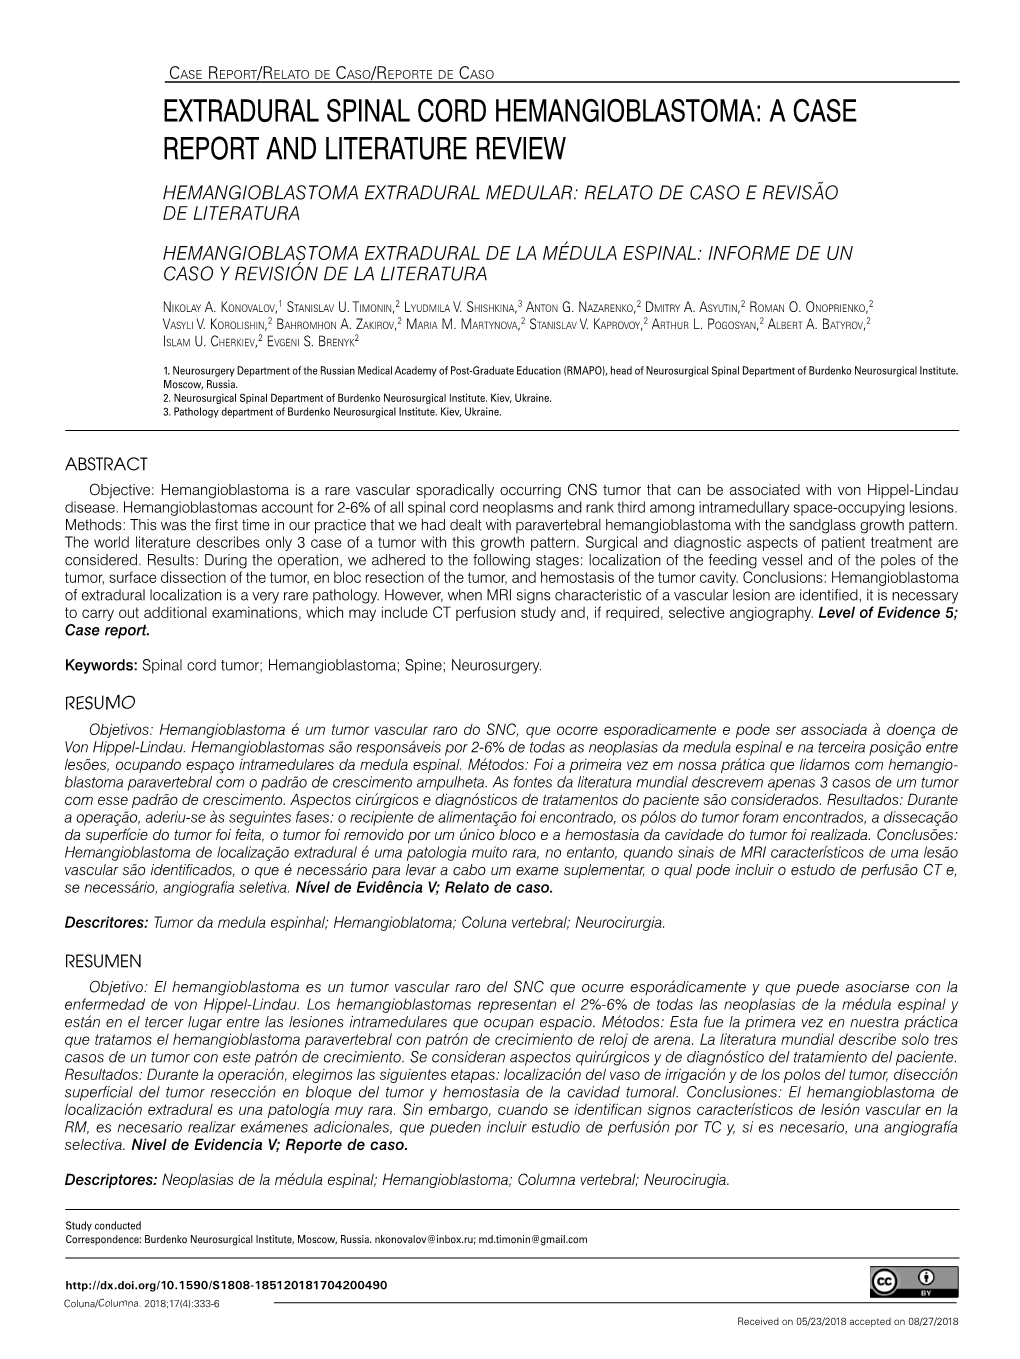 Extradural Spinal Cord Hemangioblastoma: a Case Report and Literature Review Hemangioblastoma Extradural Medular: Relato De Caso E Revisão De Literatura